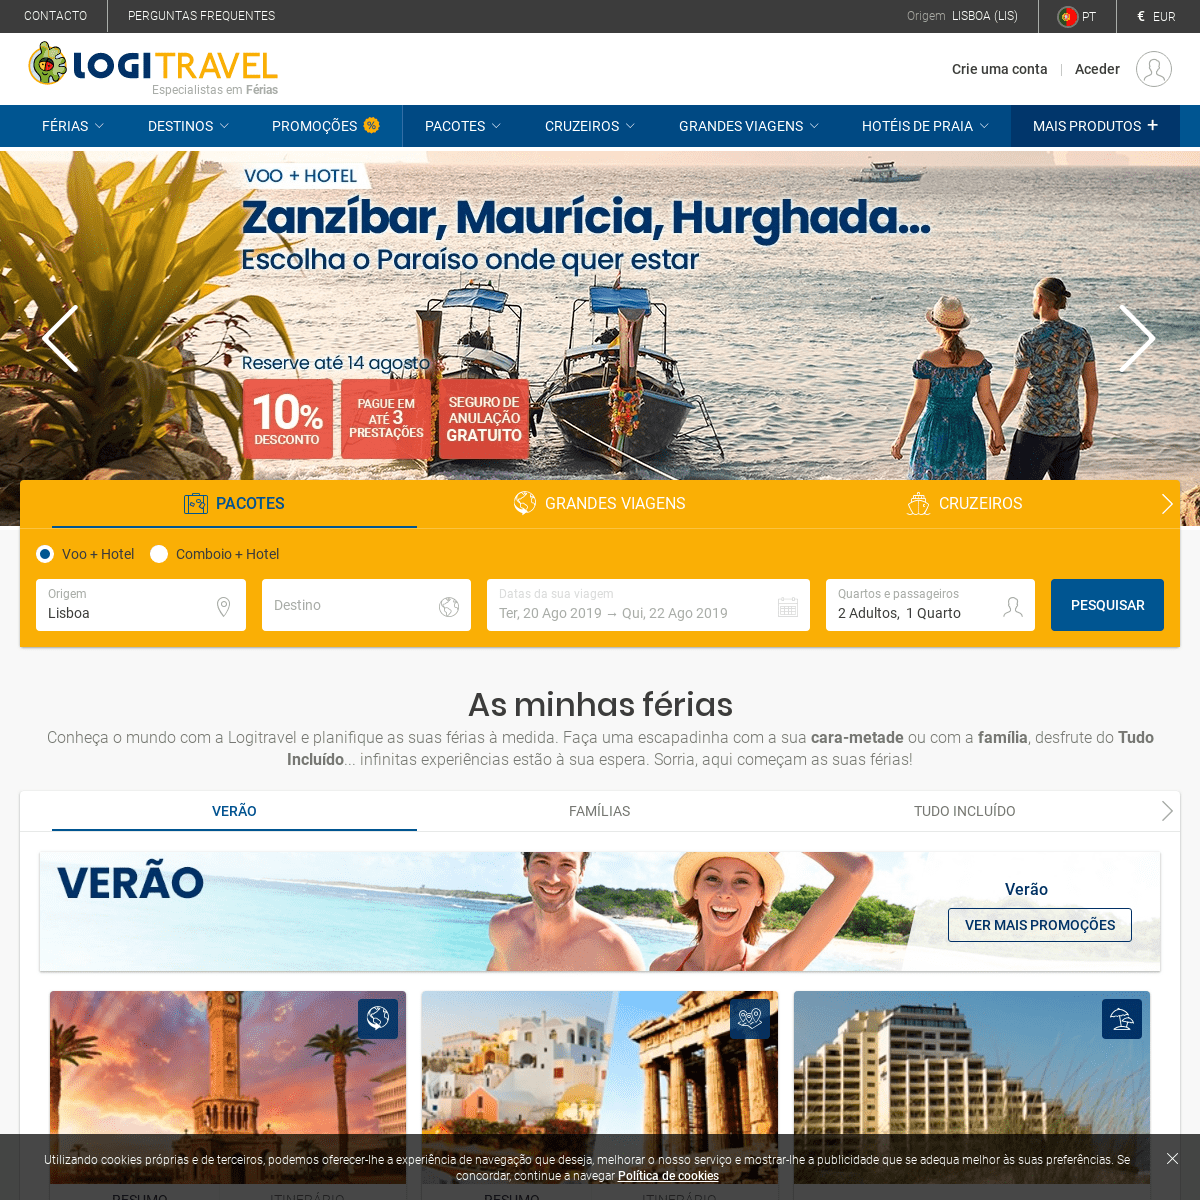 Promoções de Viagens, Hotéis, Voos baratos, Cruzeiros. Reserve a sua viagem em Logitravel.pt